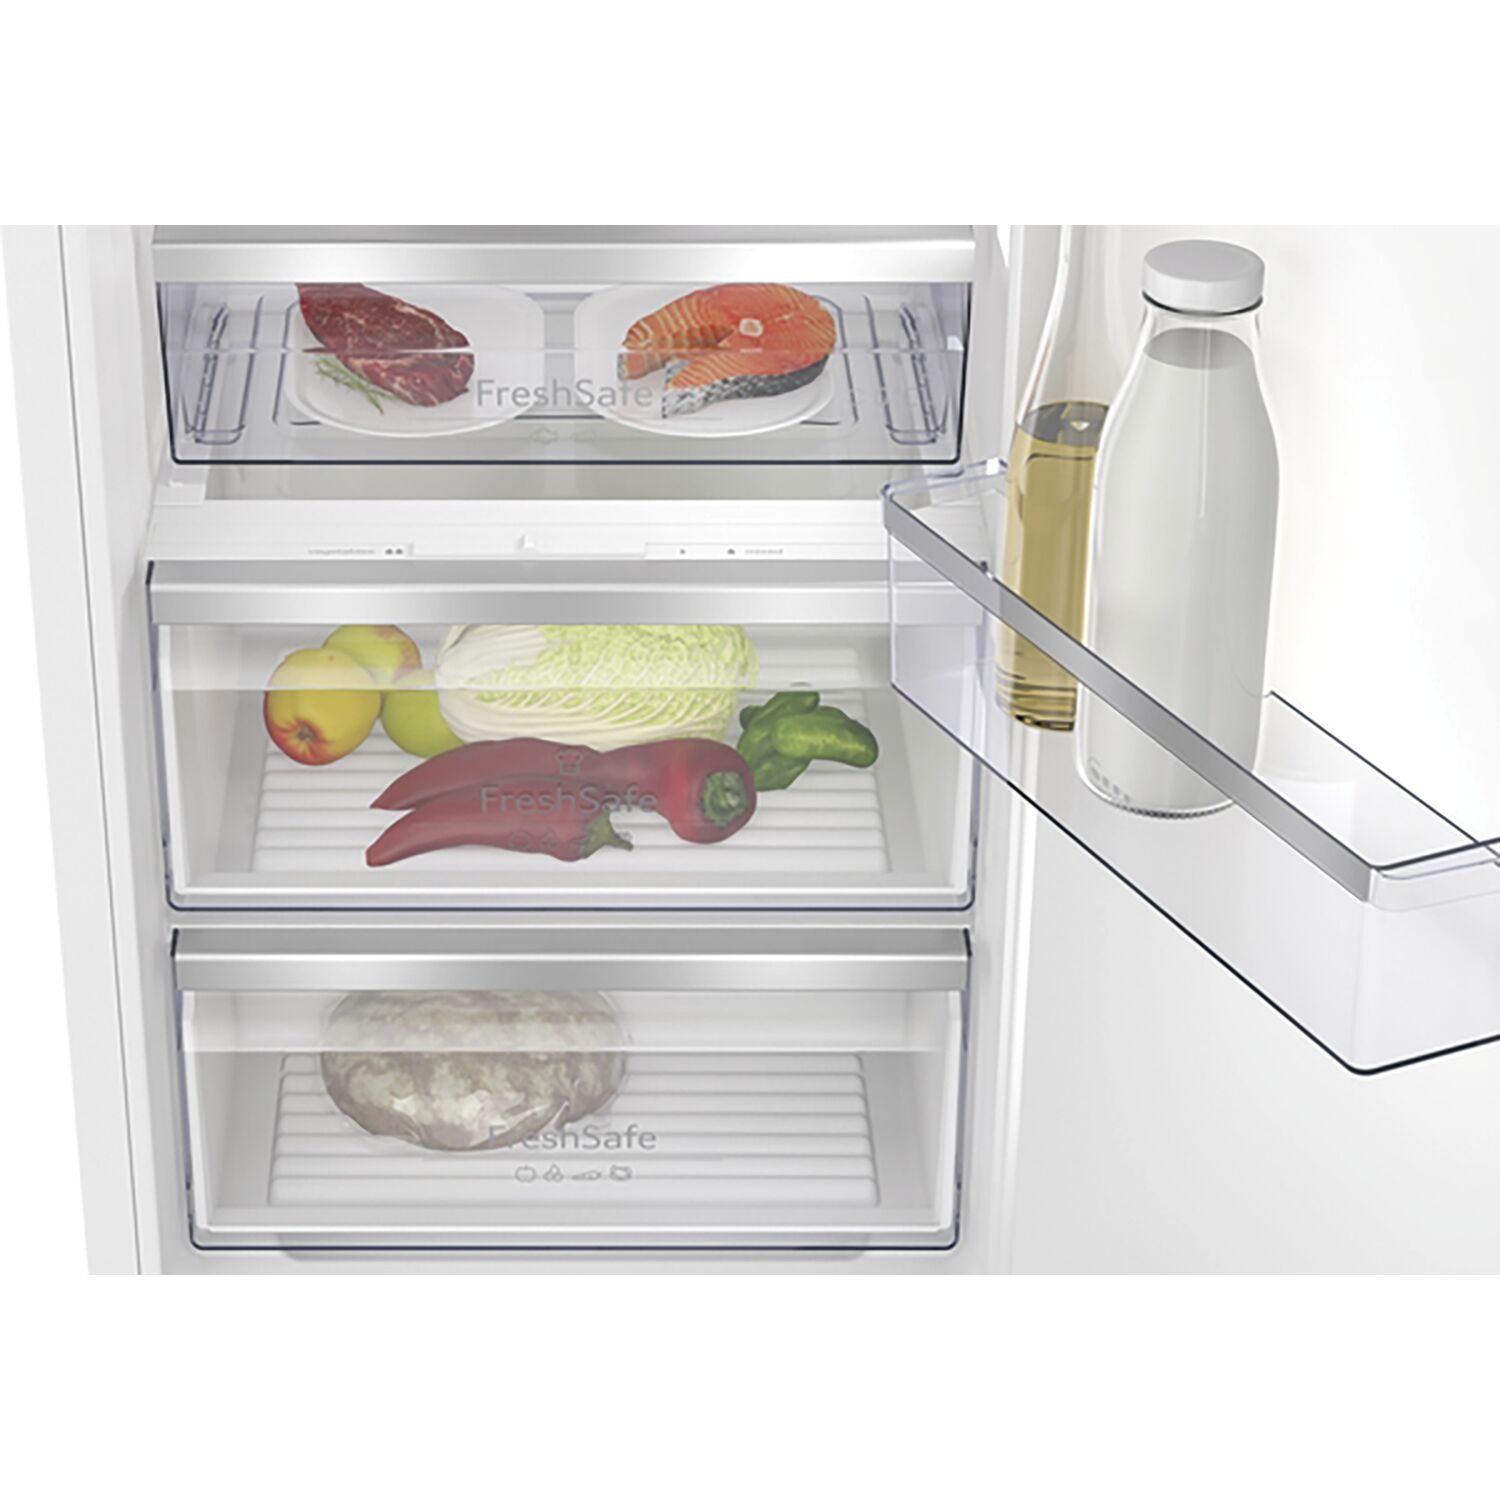 KI8526DF0 Einbau-Kühlschrank mit Gefrierfach